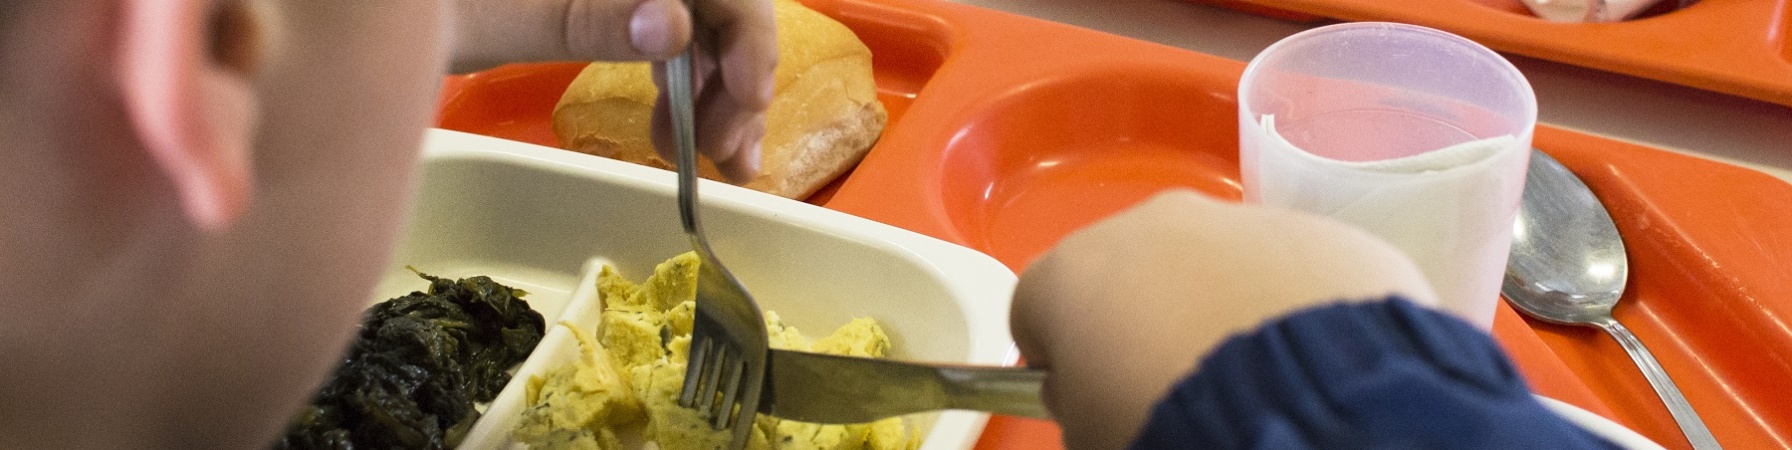 bambino di spalle mentre mangia in un piatto da mensa scolastica